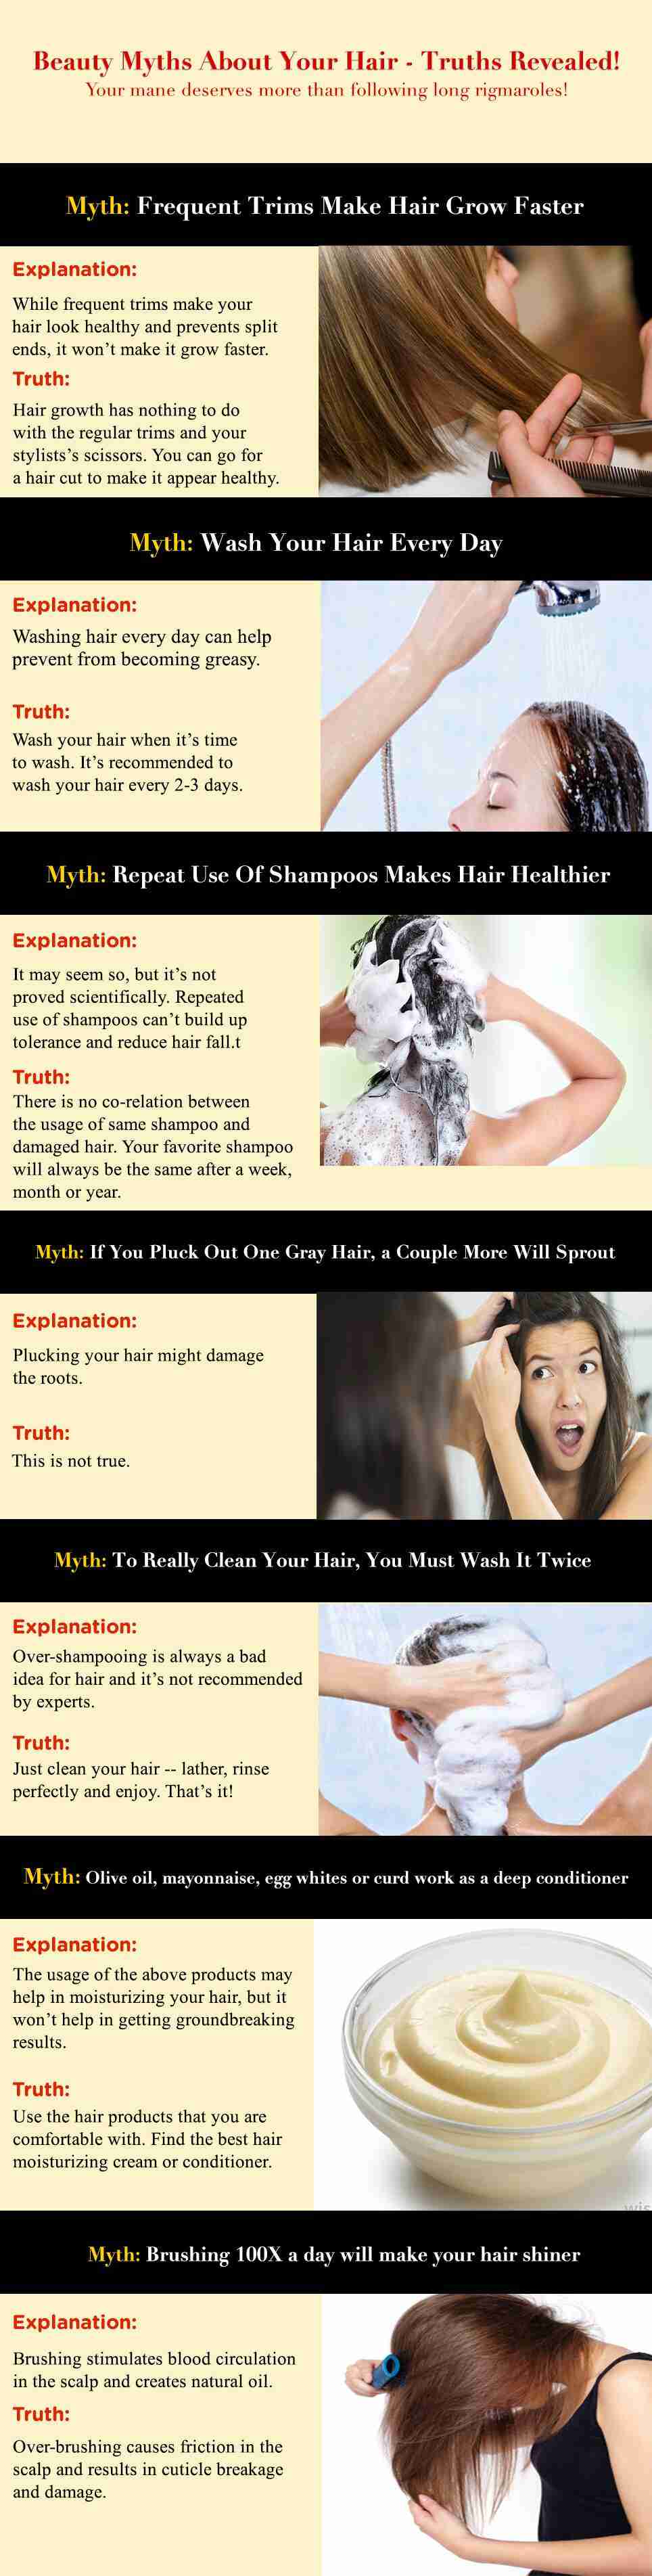 hair beauty myth